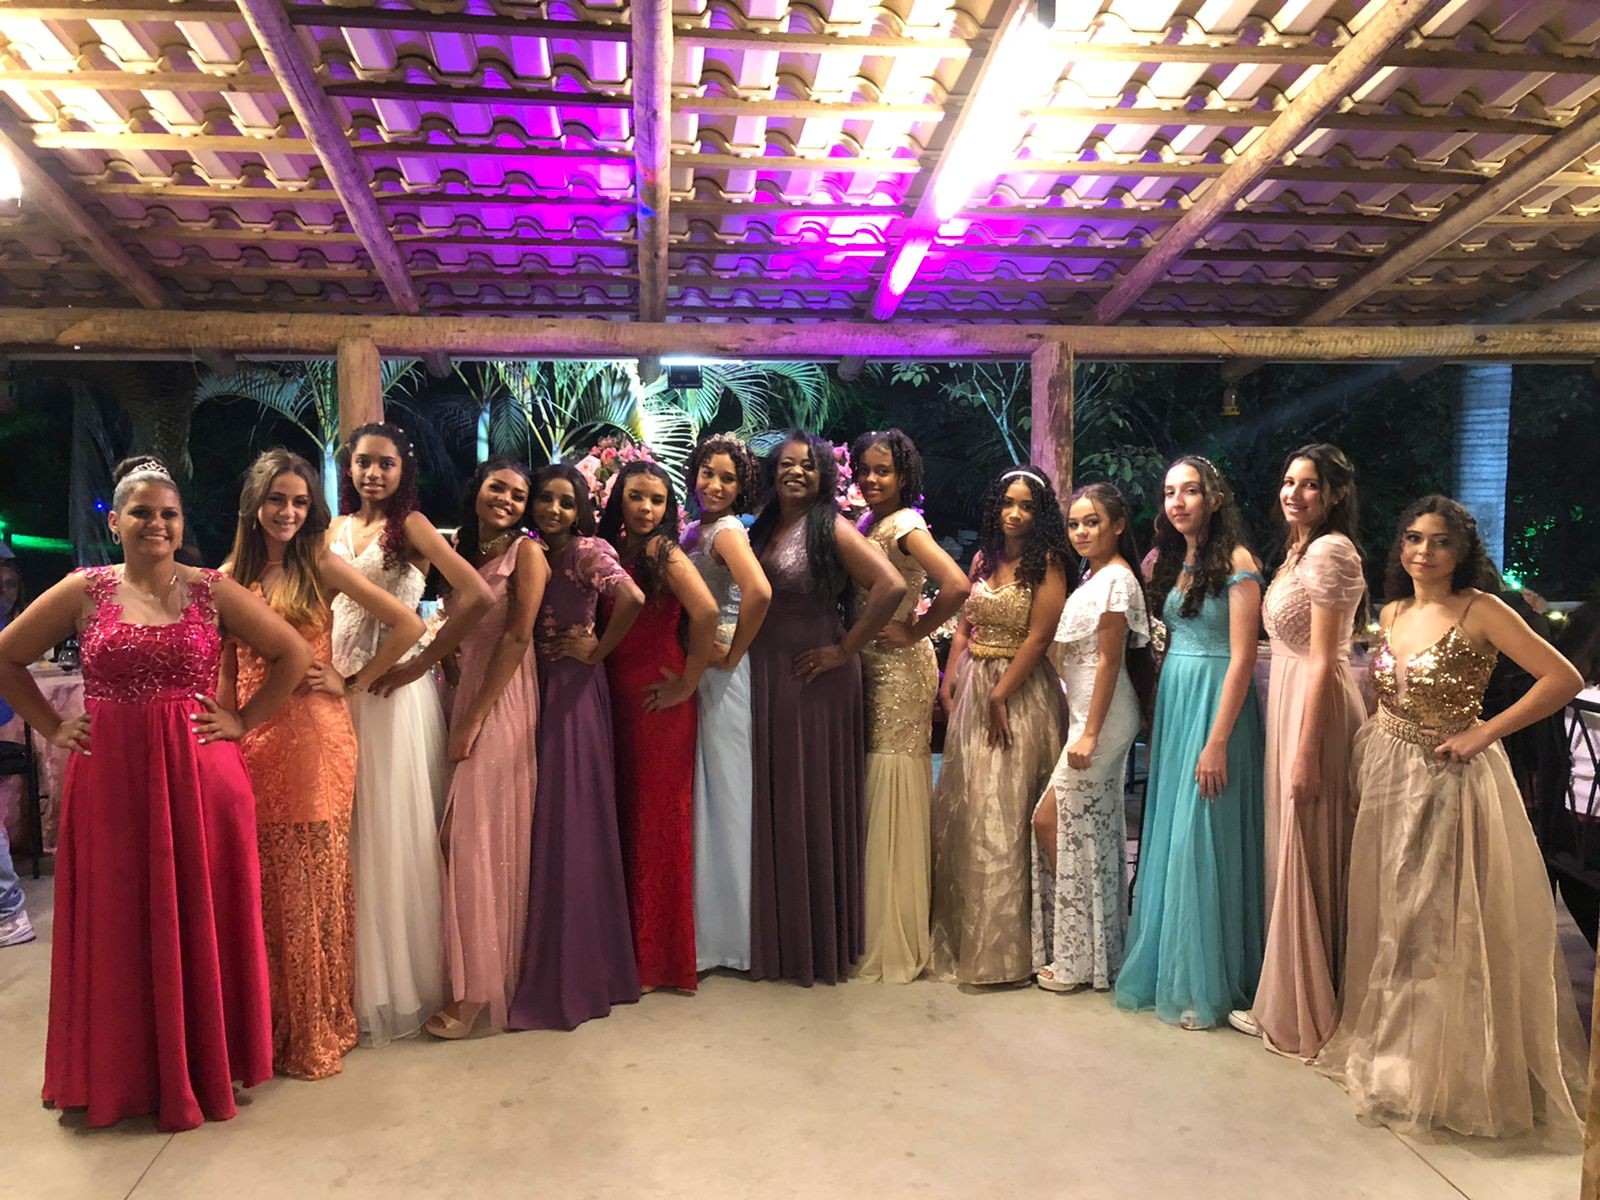 Noite dos sonhos: meninas carentes ganham baile de debutante em Divinópolis 